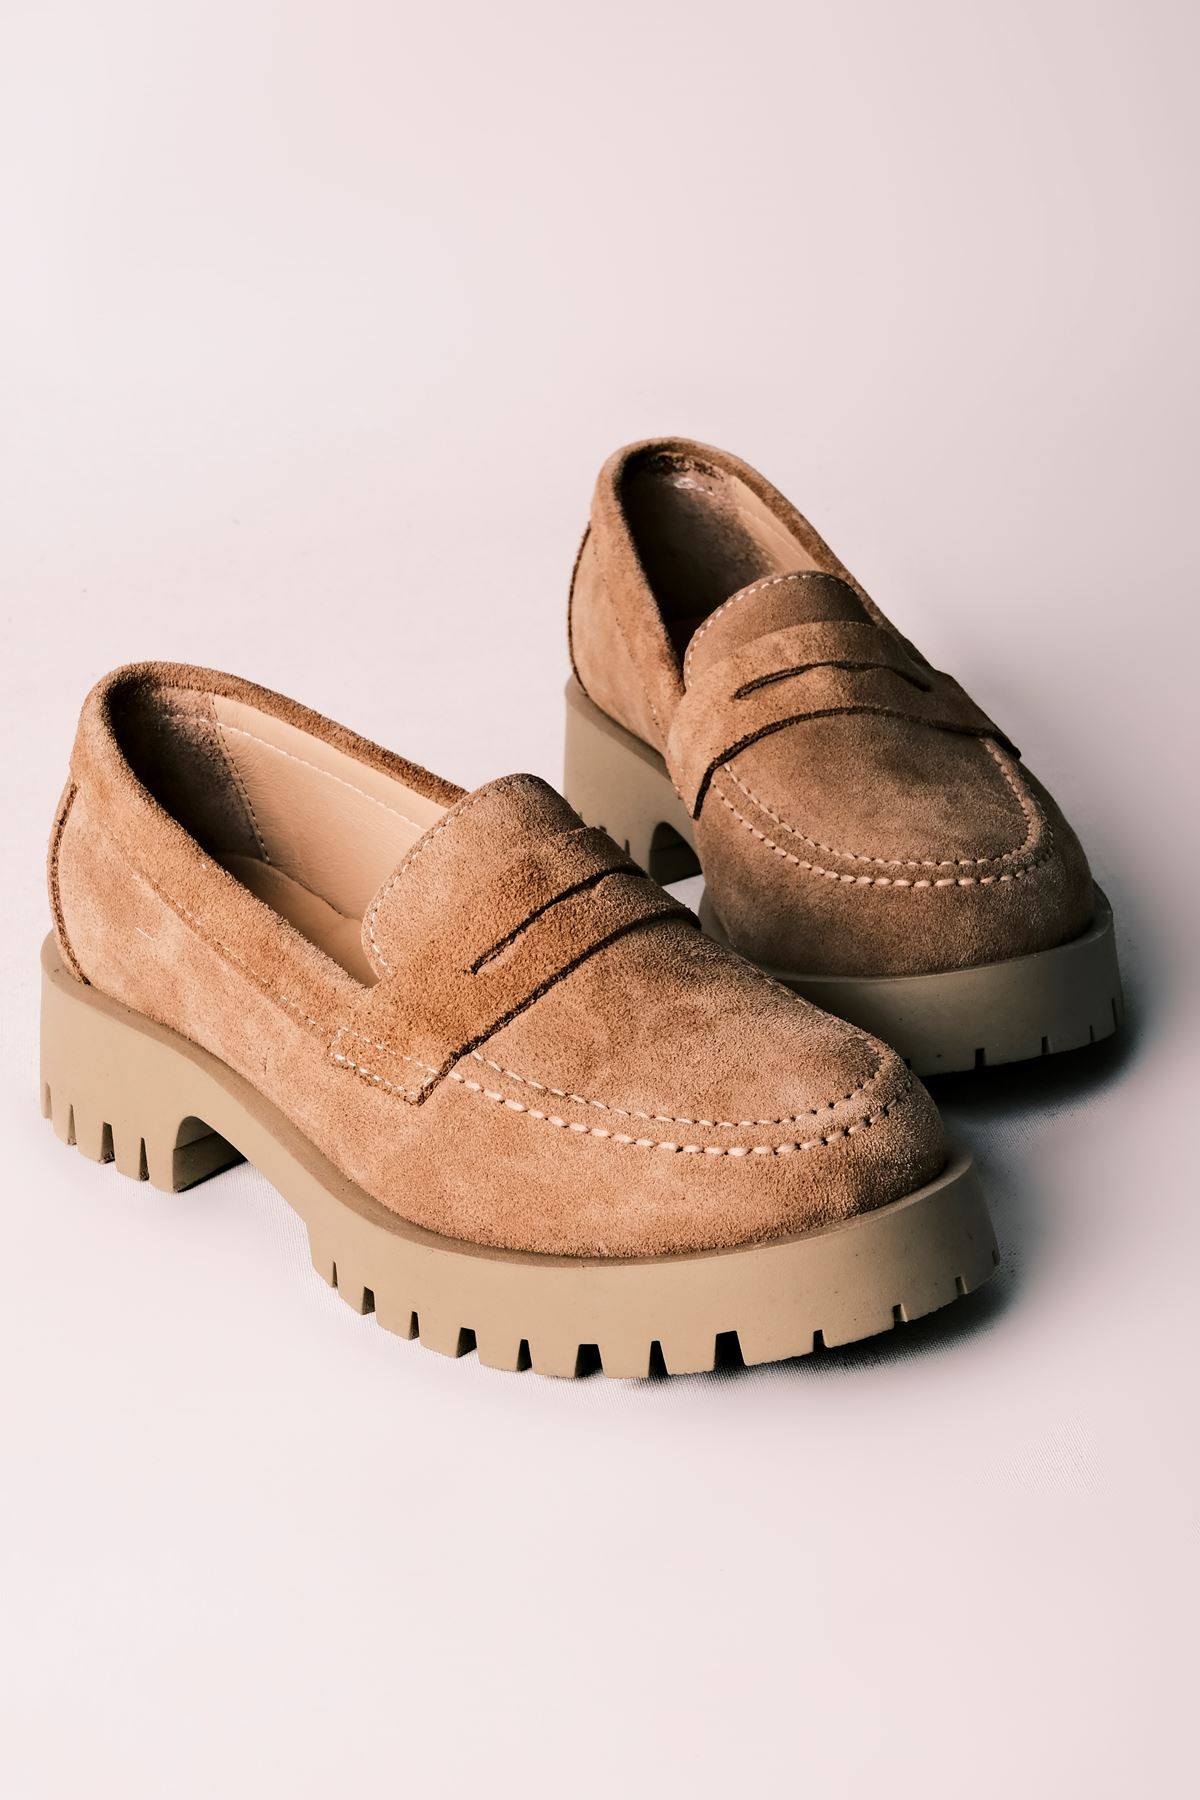 Deva Kadın Hakiki Deri Oxford Ayakkabı Düz Model - S.VİZYON